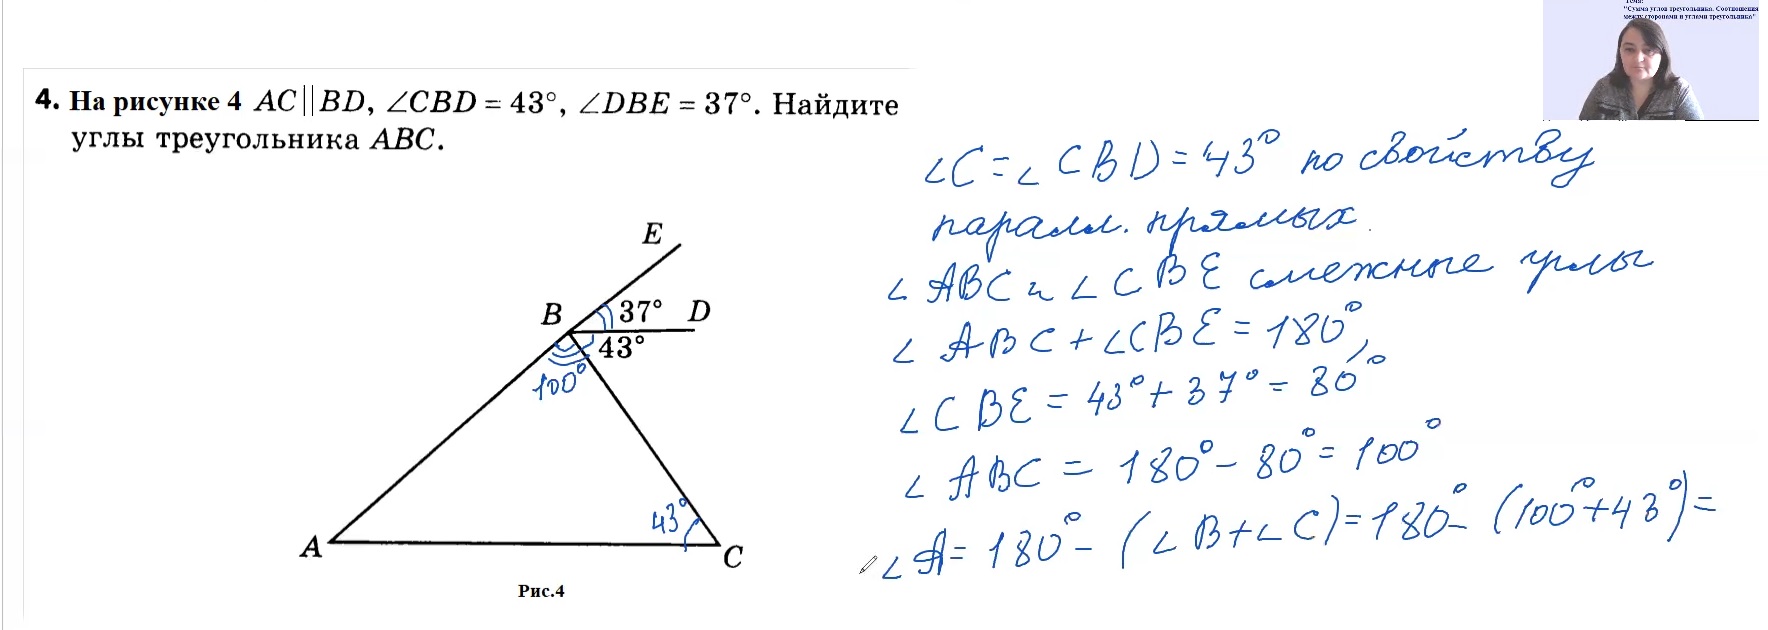 Геометрия 7 класс прямоугольные треугольники решение задач